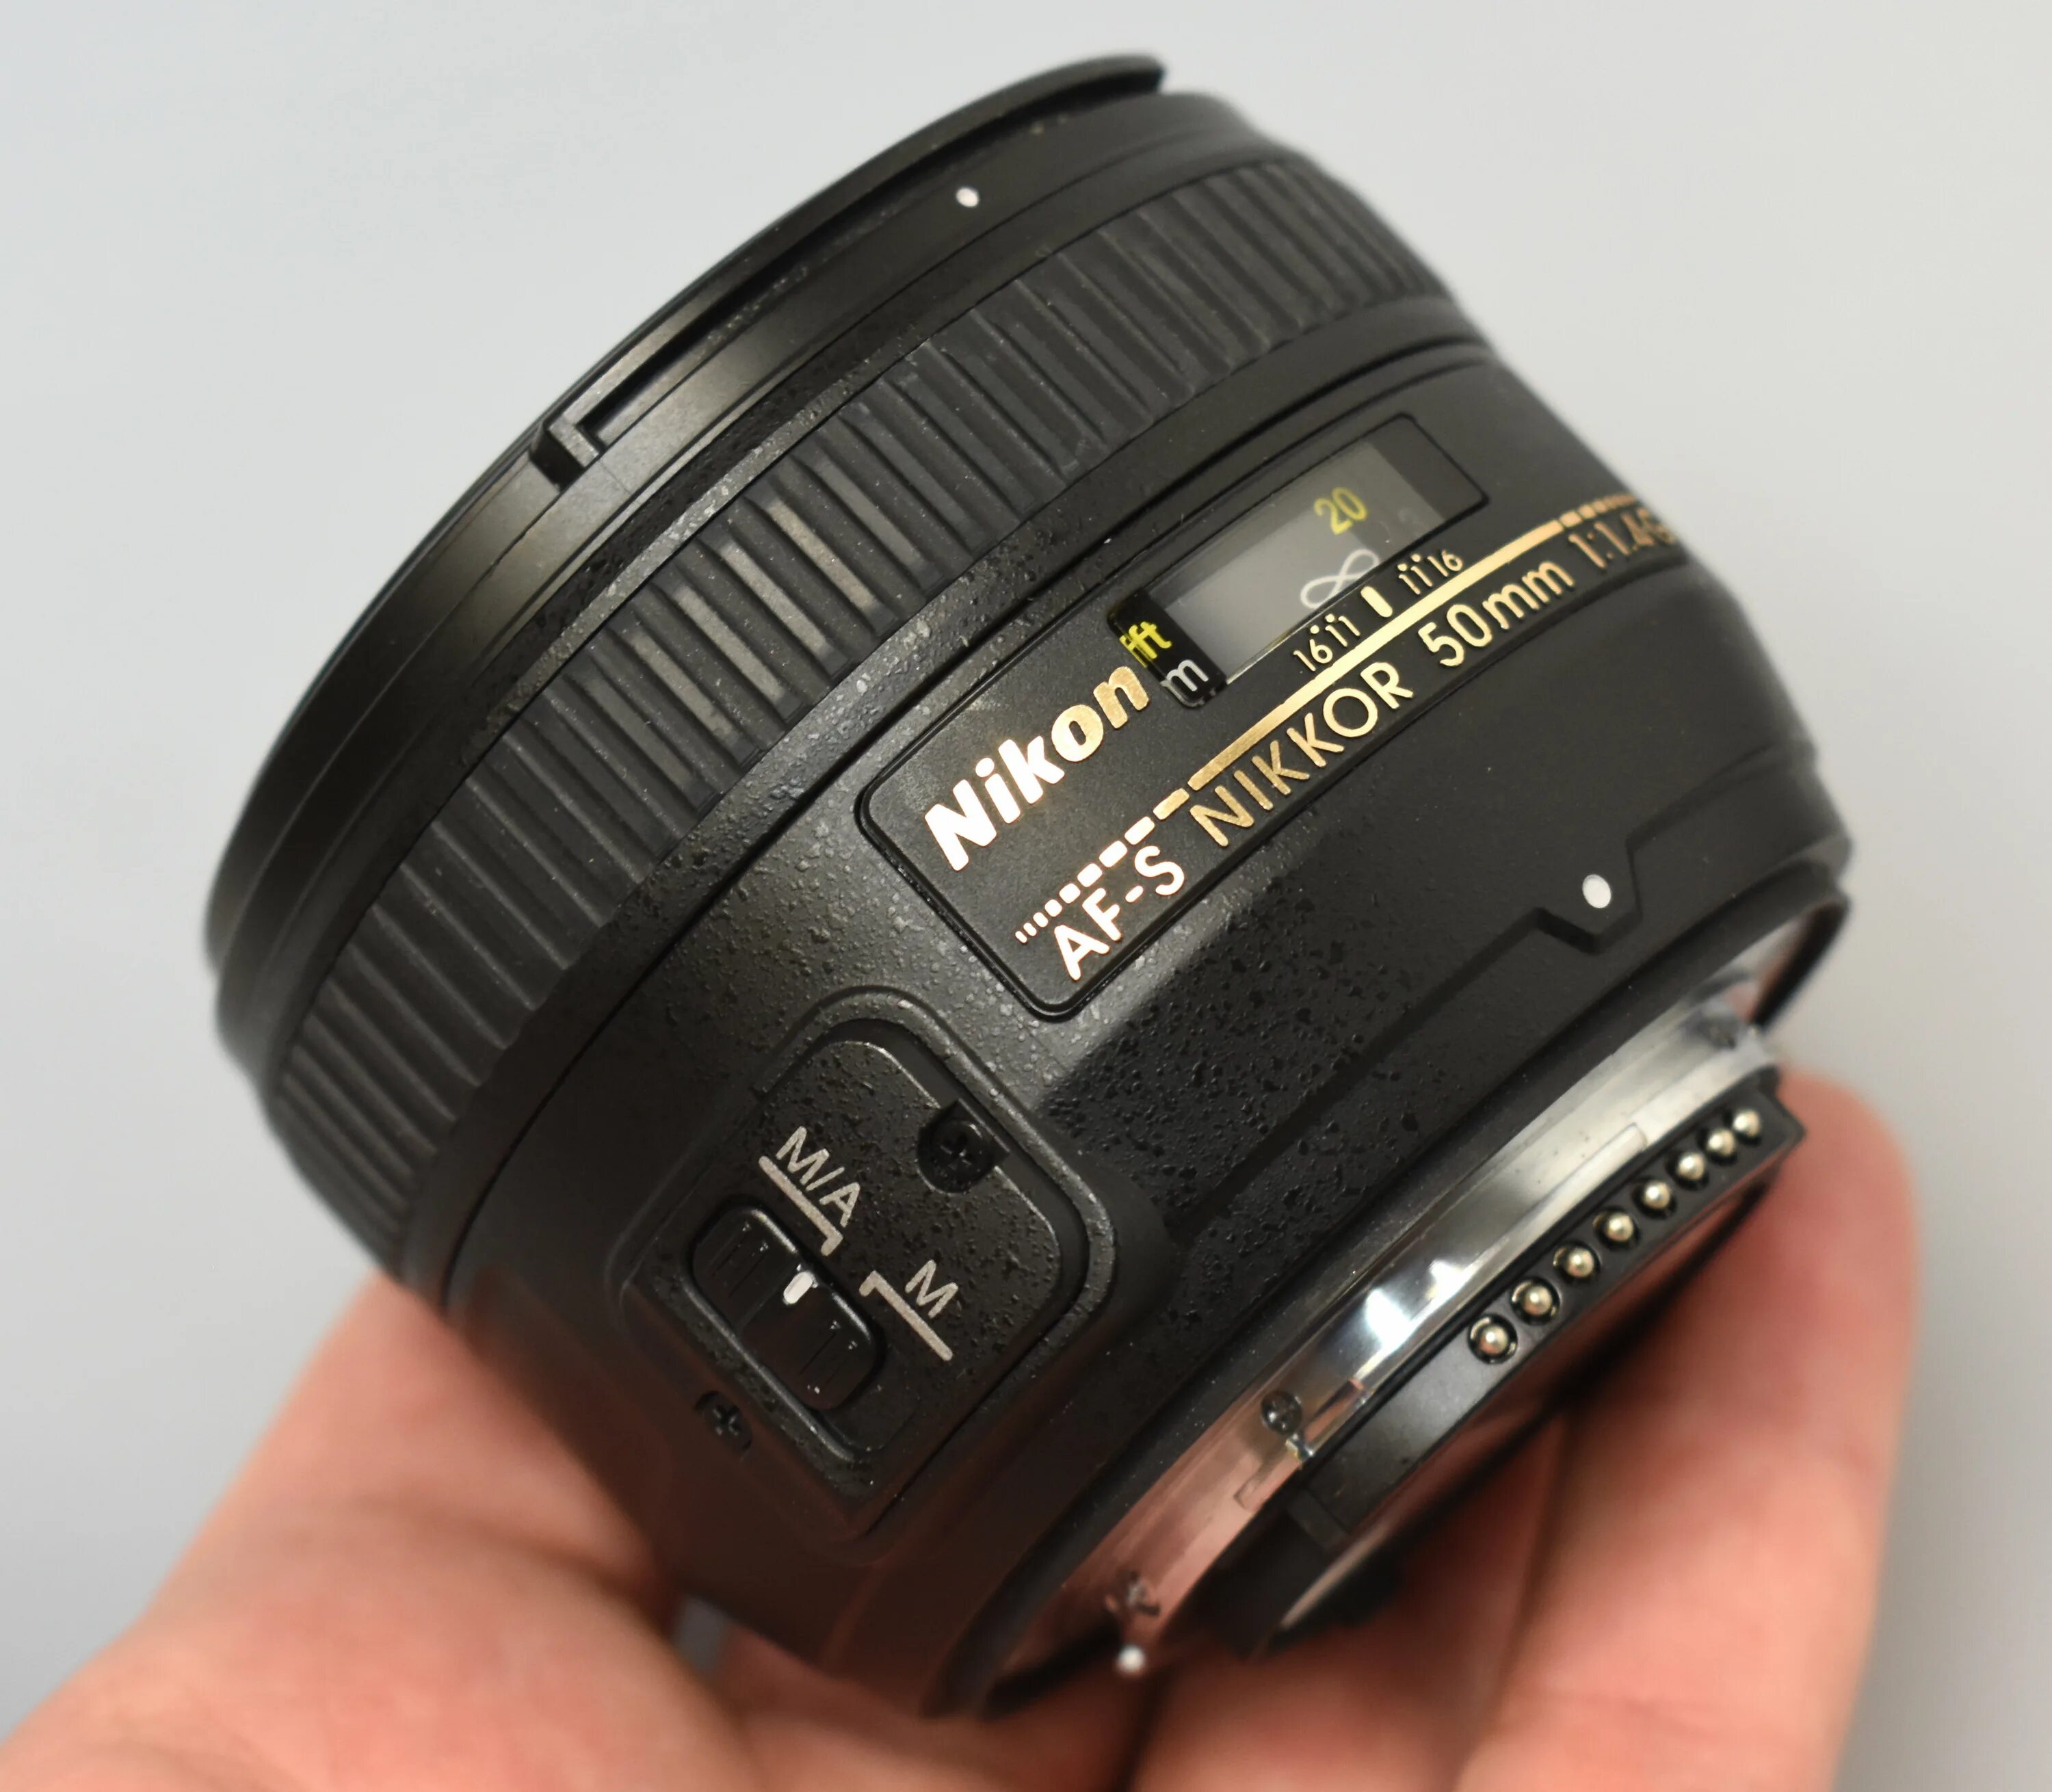 Nikkor 50mm g af s. Объектив Nikon 50mm f/1.4g af-s Nikkor. Nikon 50mm f/1.4 Nikkor. Nikon 50mm f/1.4g Nikkor.